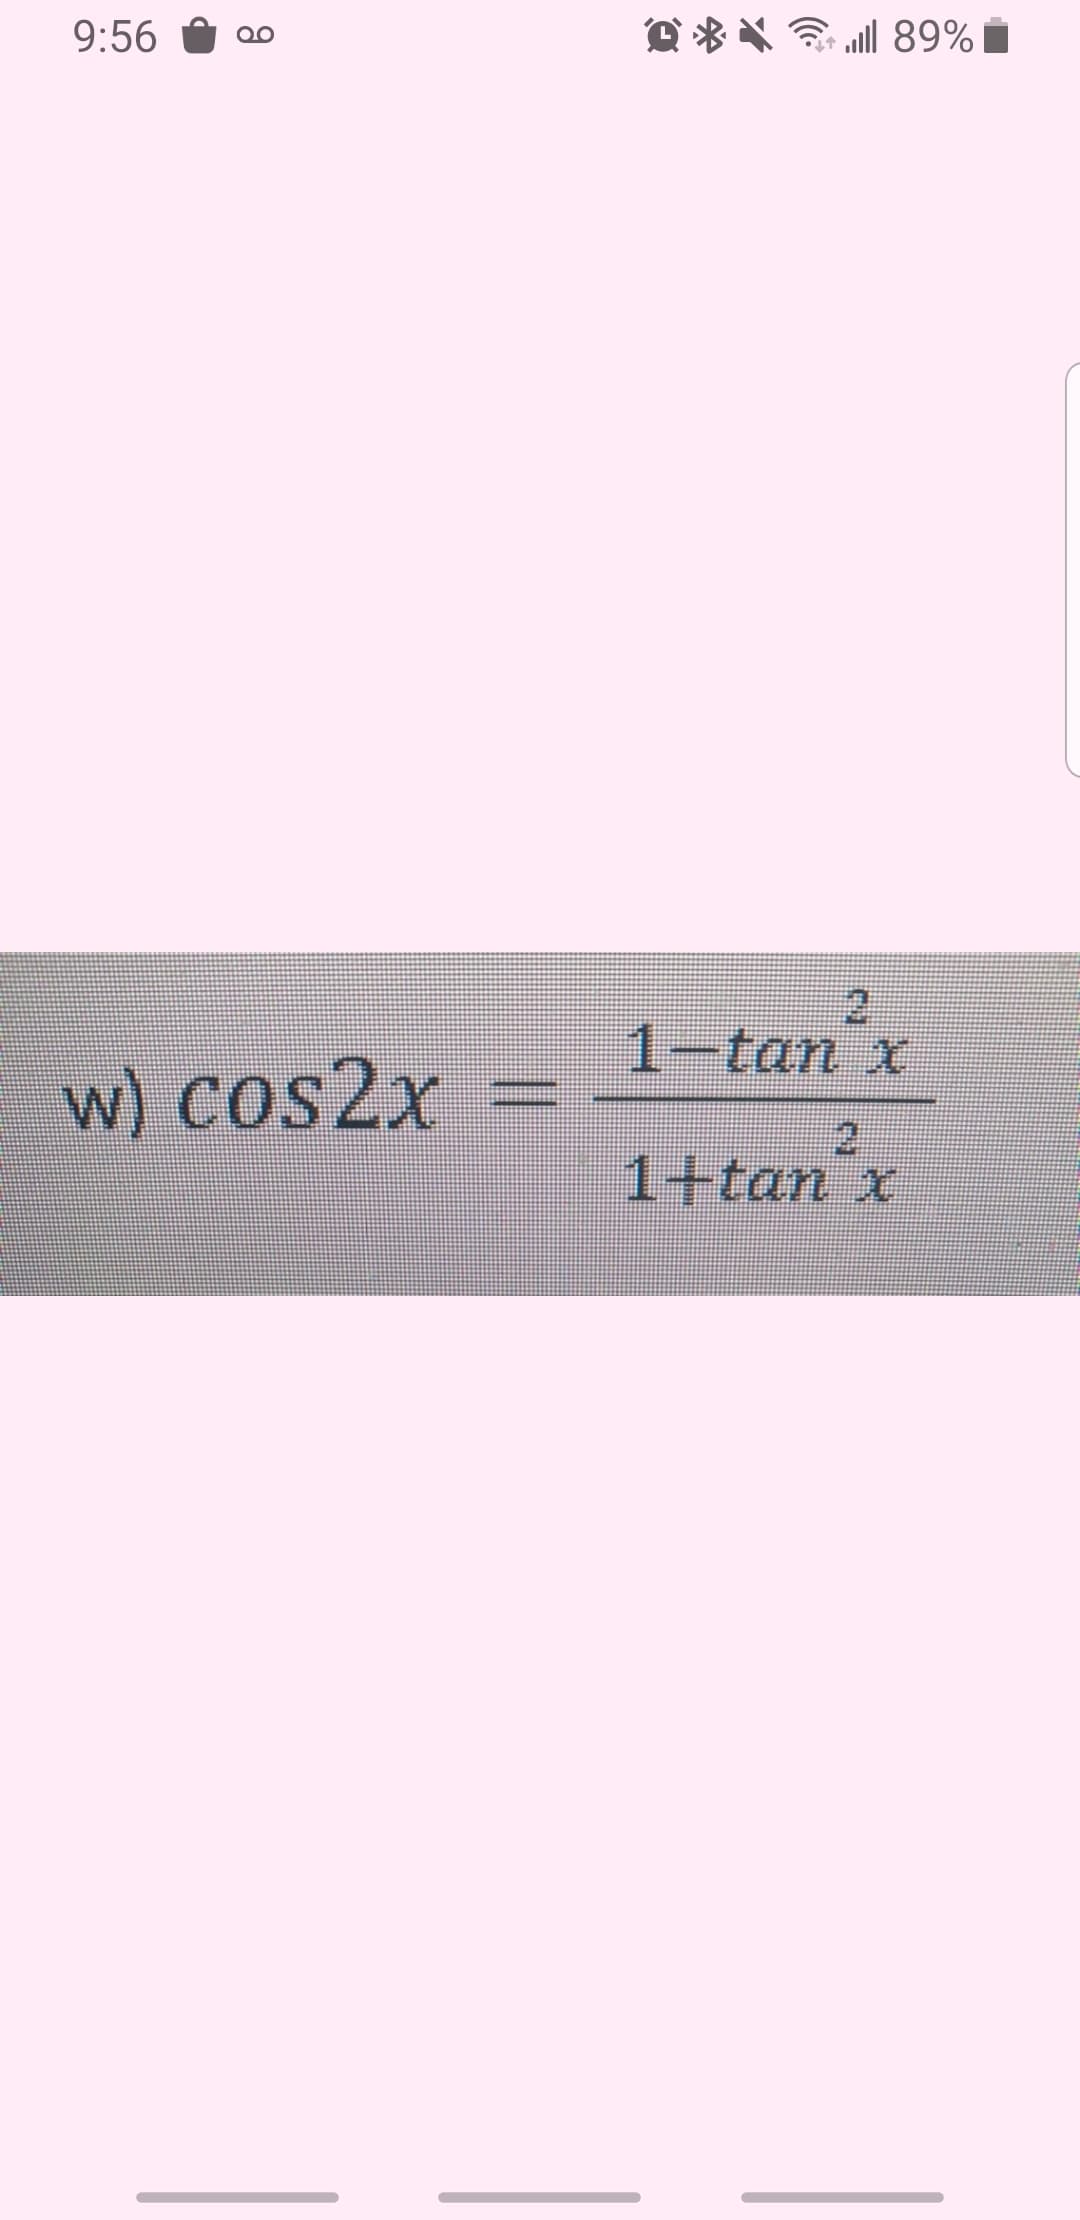 9:56
O * * ll 89% i
2.
1-tan x
w) cos2x
1+tan x
